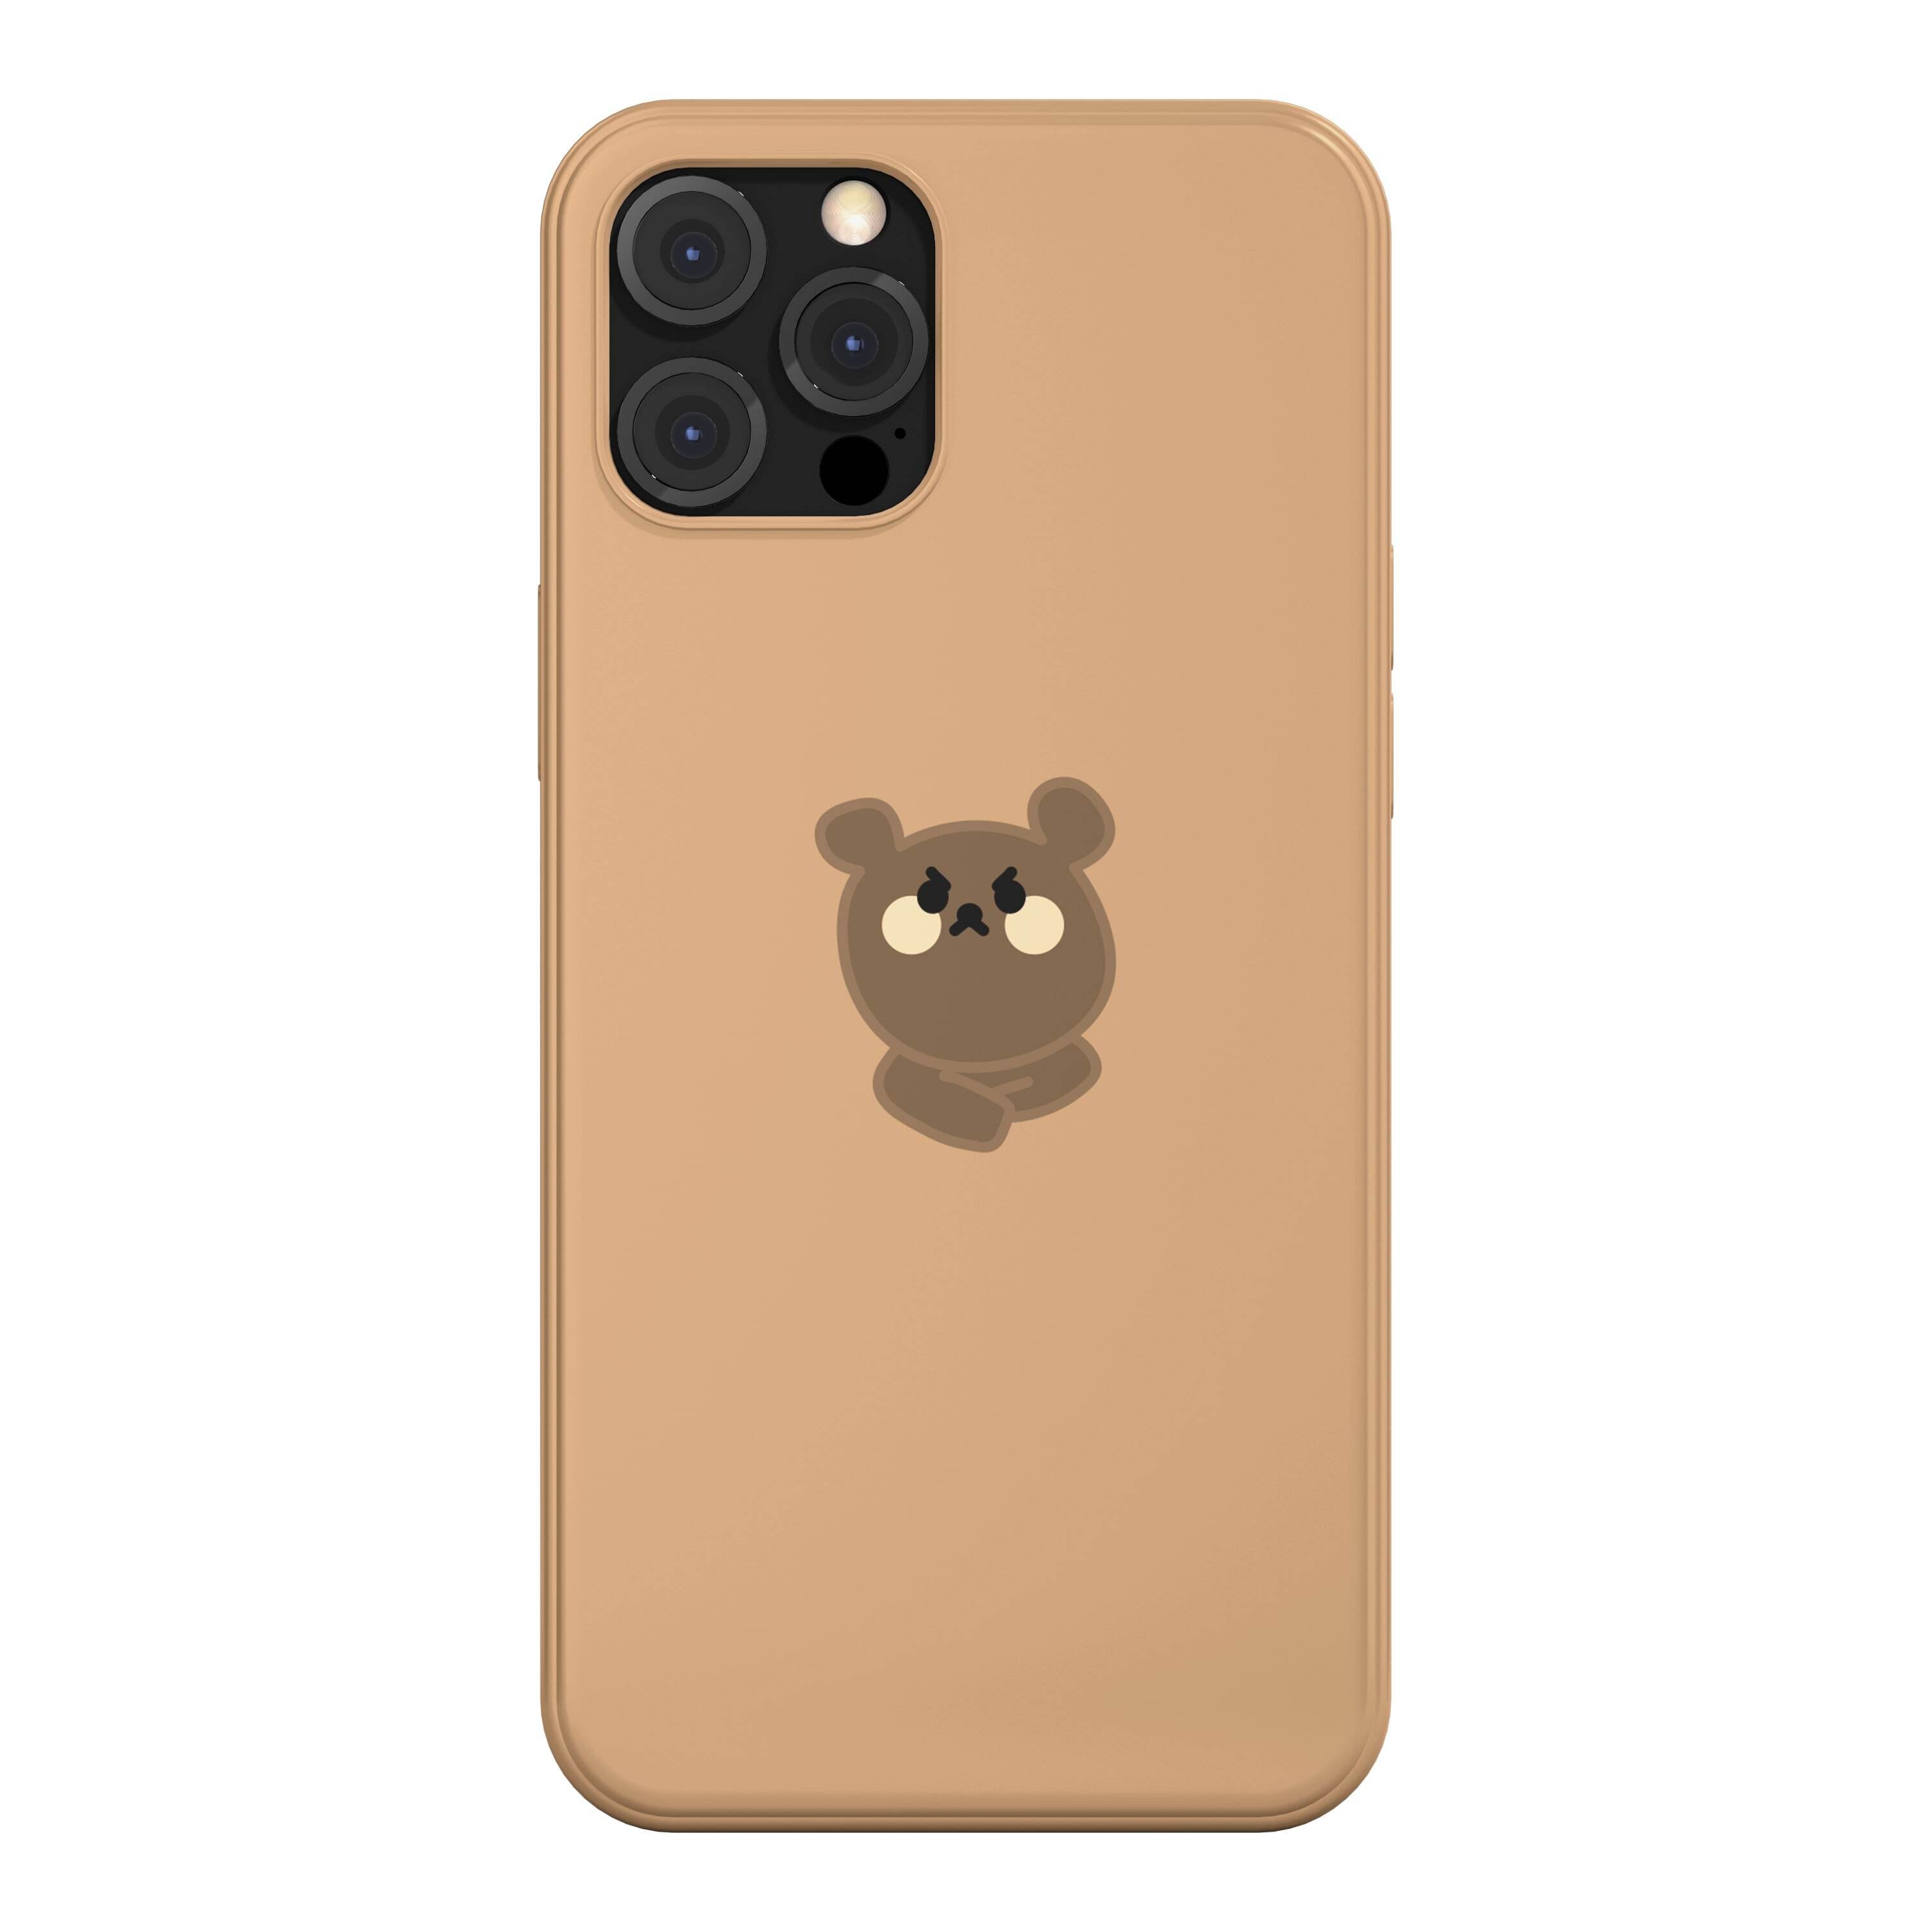 韓国 スマホケース [ANIMAL FRIENDS] かわいい くま イラスト キャラクター デザイナーズ iPhone Android対応 携帯カバー 熊 ベアー クマ(コミ)